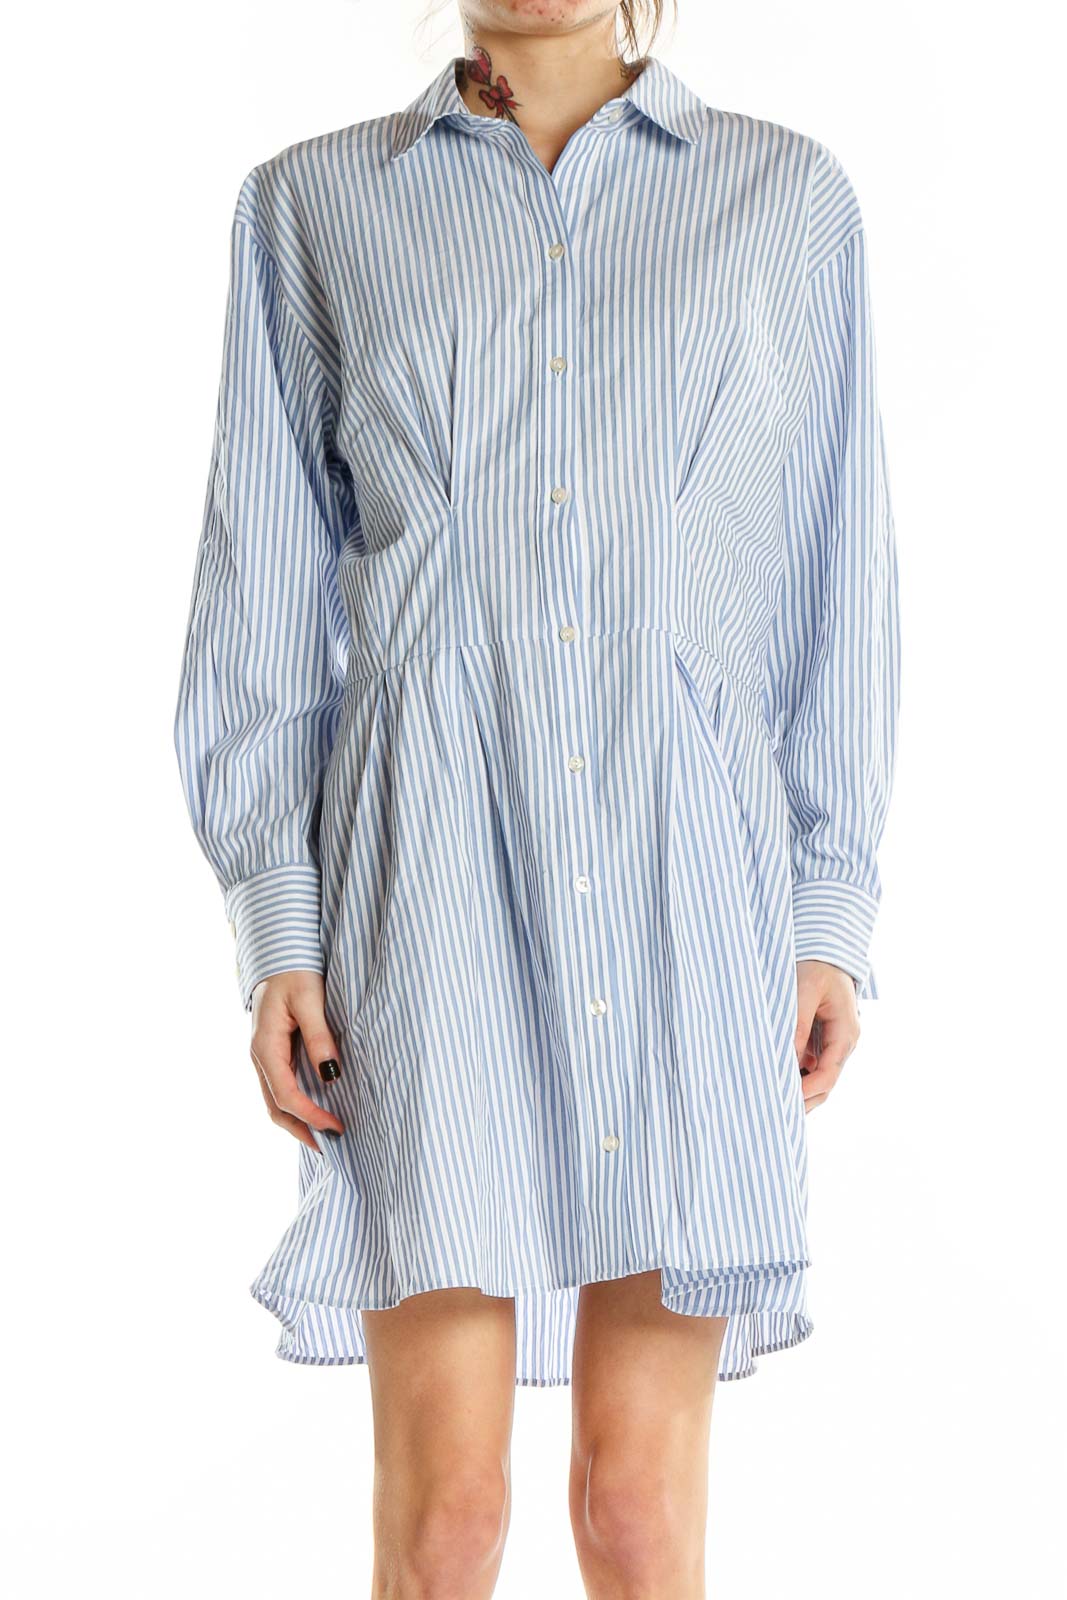 Blue Long Sleeve Striped Shirt Dress Front